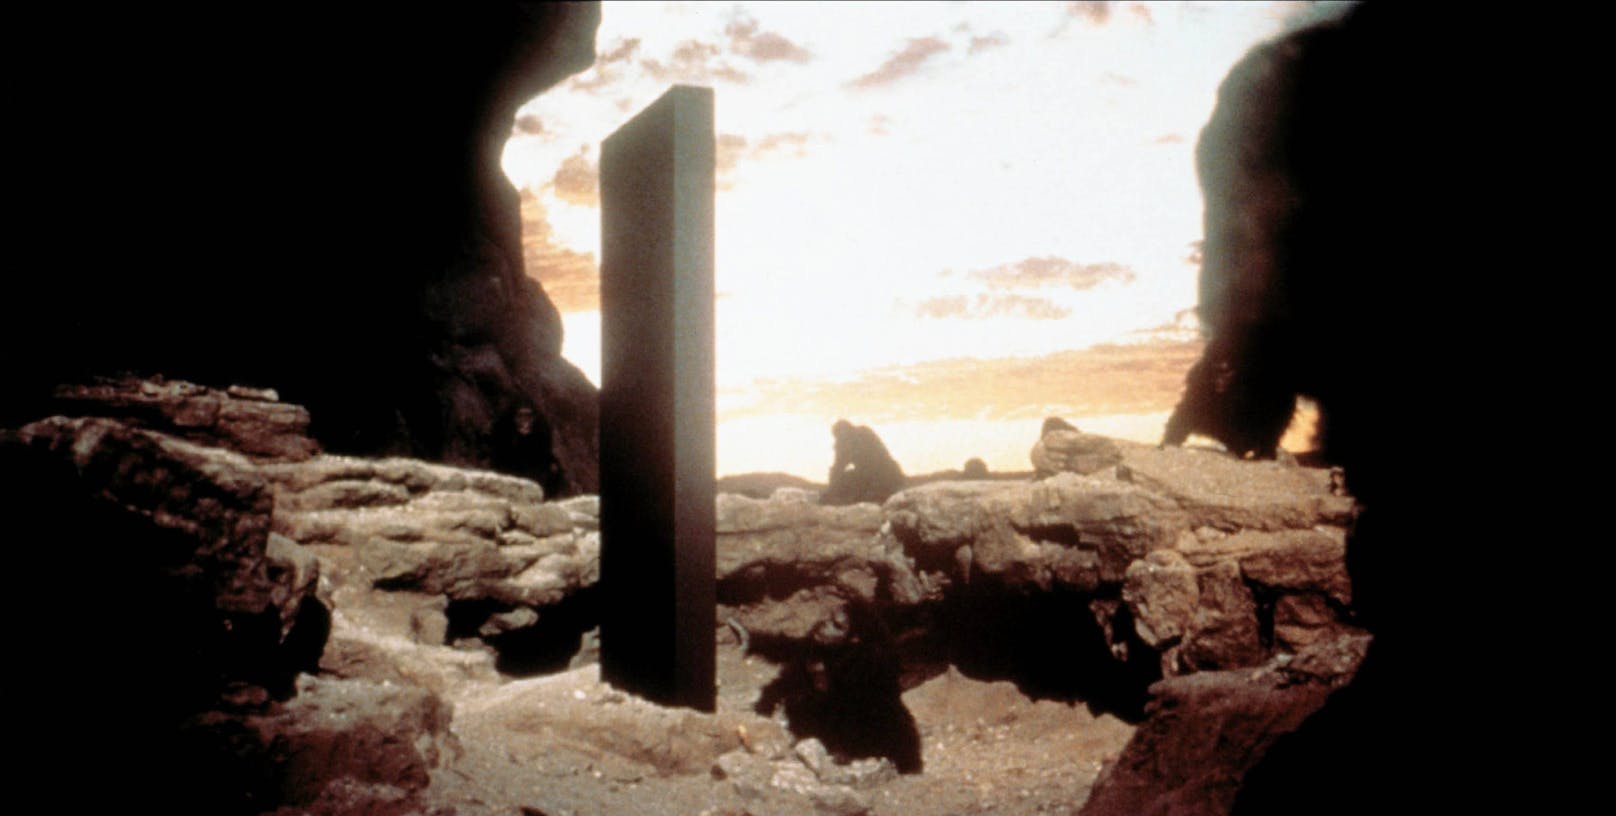 Szene aus "2001: A Space Odyssey": Steinzeitliche Affenmenschen untersuchen einen seltsamen Monolithen in der Wüste